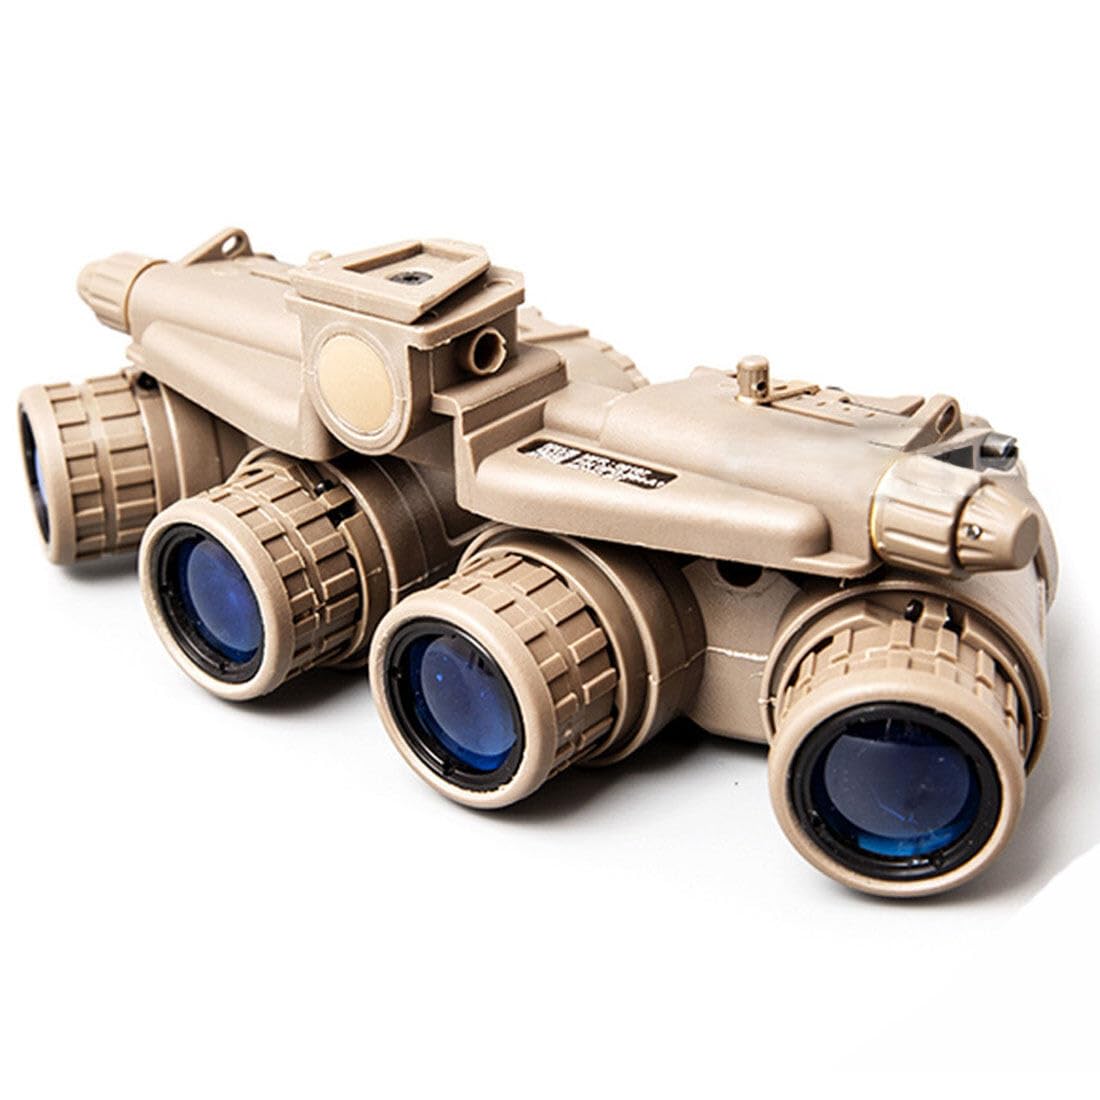 SUNDARE Nachtsichtgerät, Vier-Rohr-Binokular Nachtsichtbrille, Militär Helmbrille GPNVG18 Nachtsichtgerät für Beobachtung und Patrouille, Nachtsichtbrille für Erwachsene (Braun)